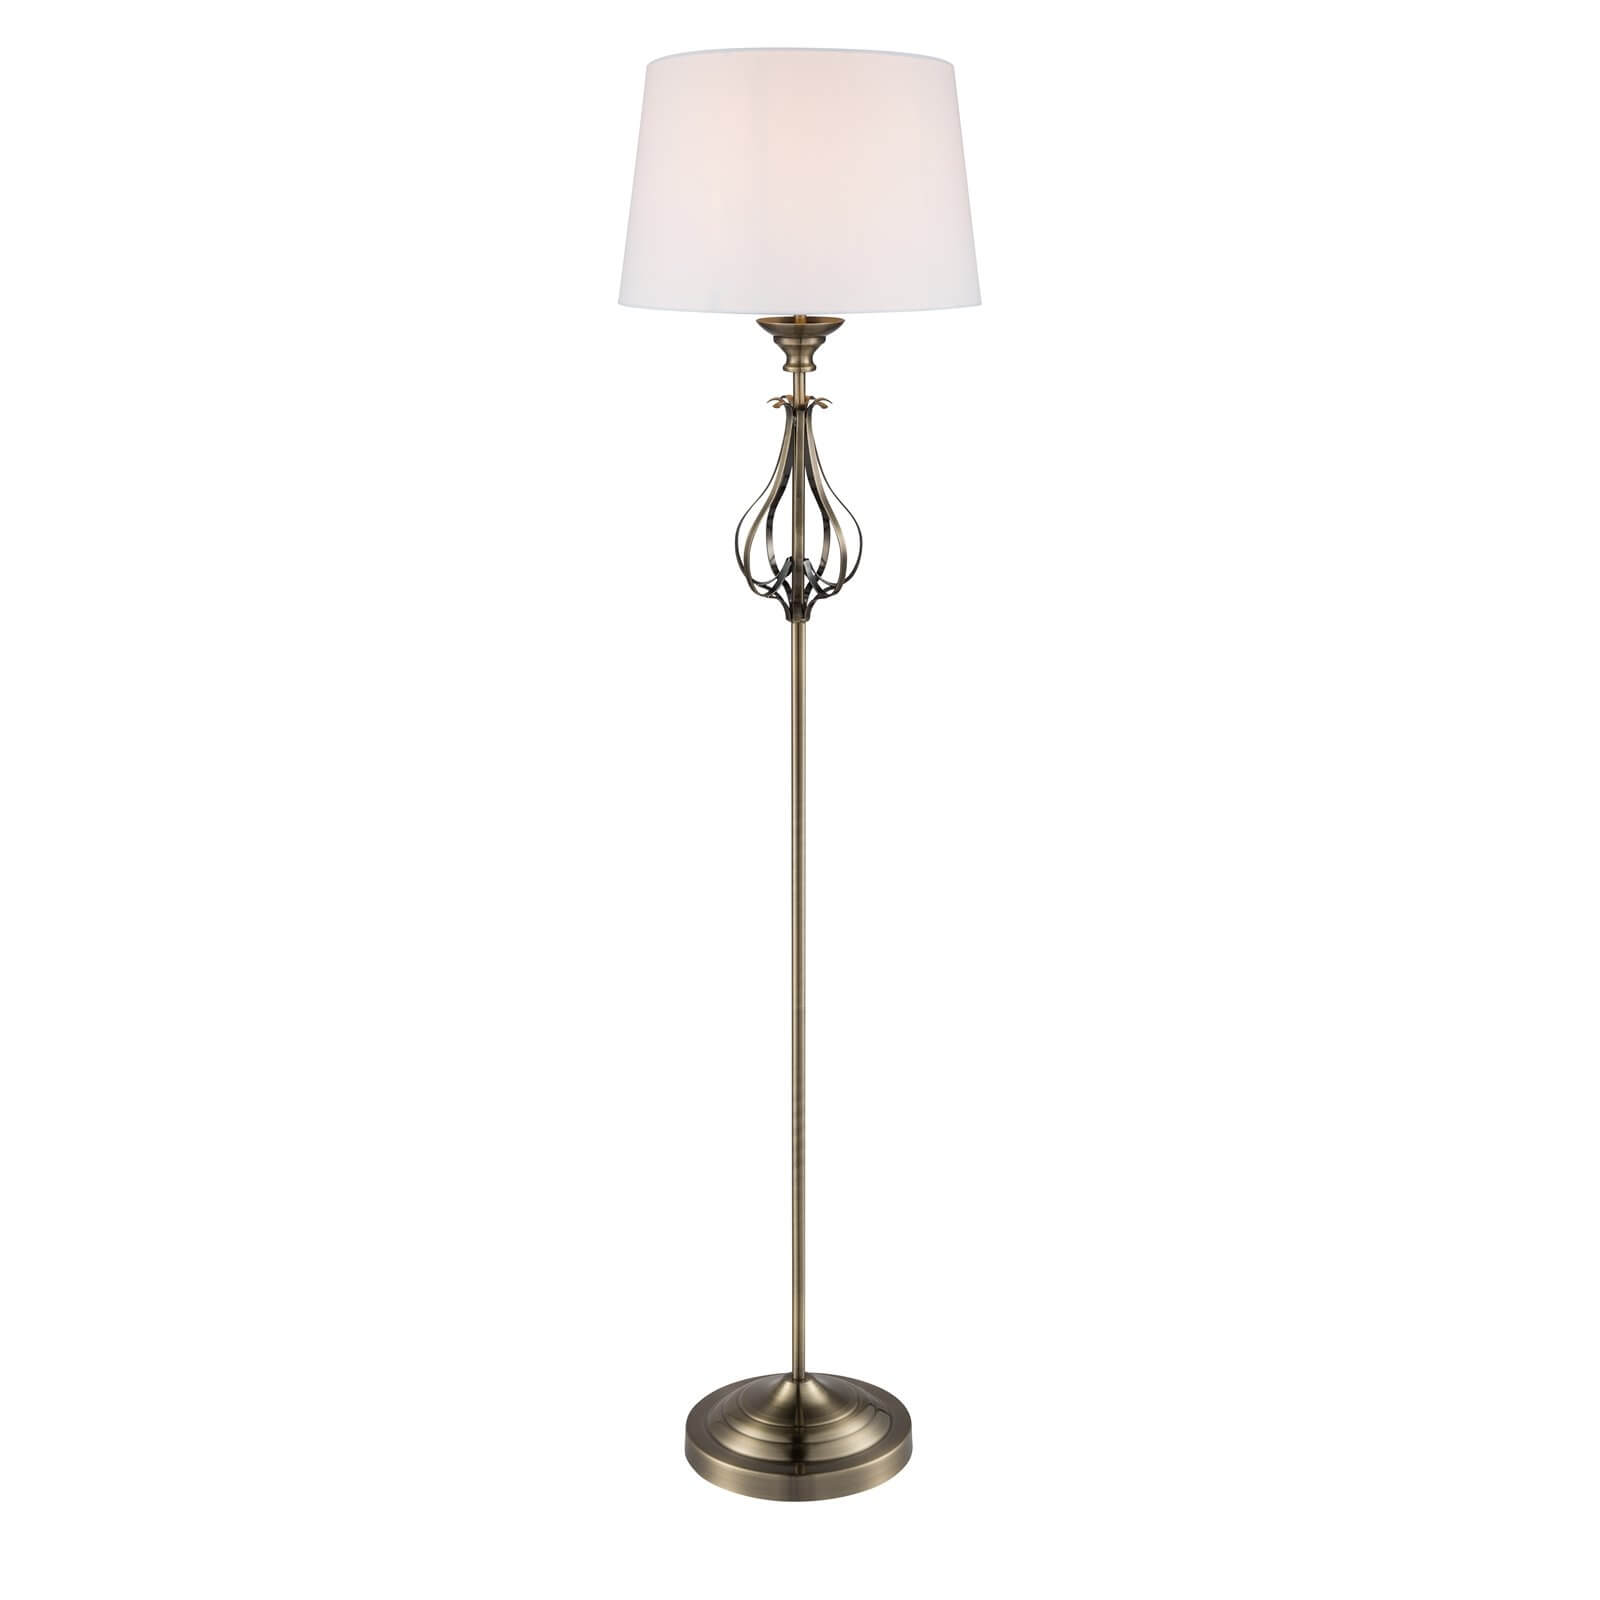 Piper Antique Brass Floor Lamp